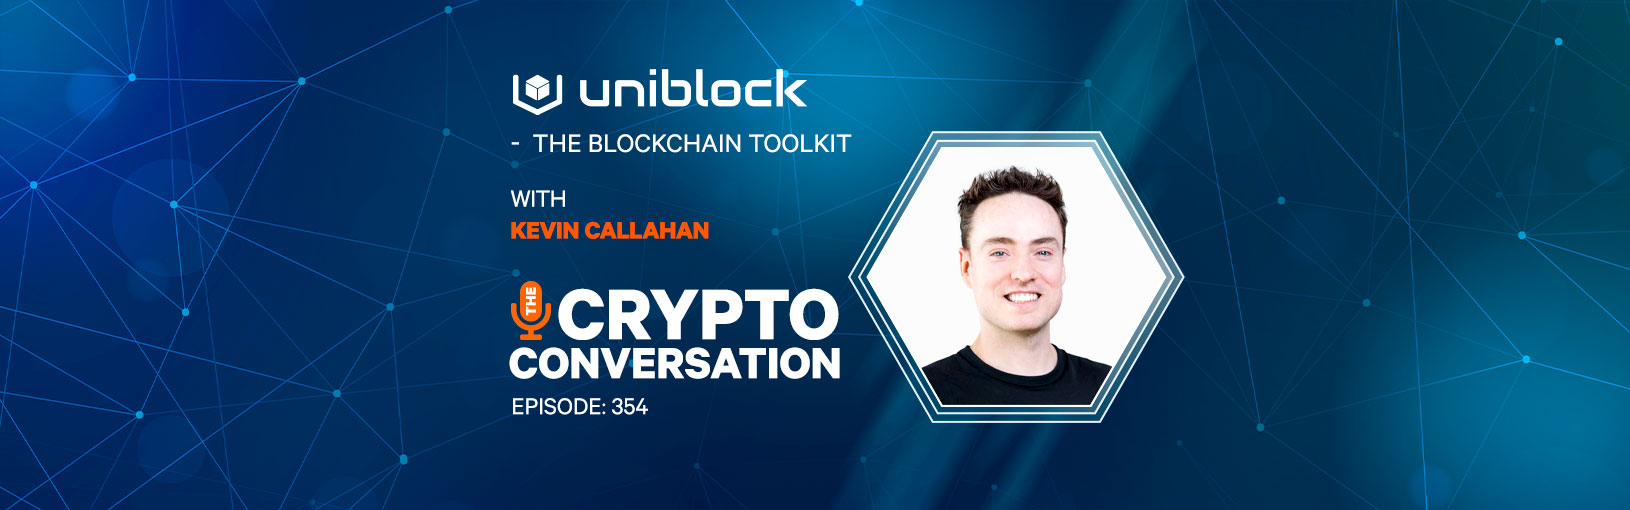 Uniblock – the Blockchain Toolkit